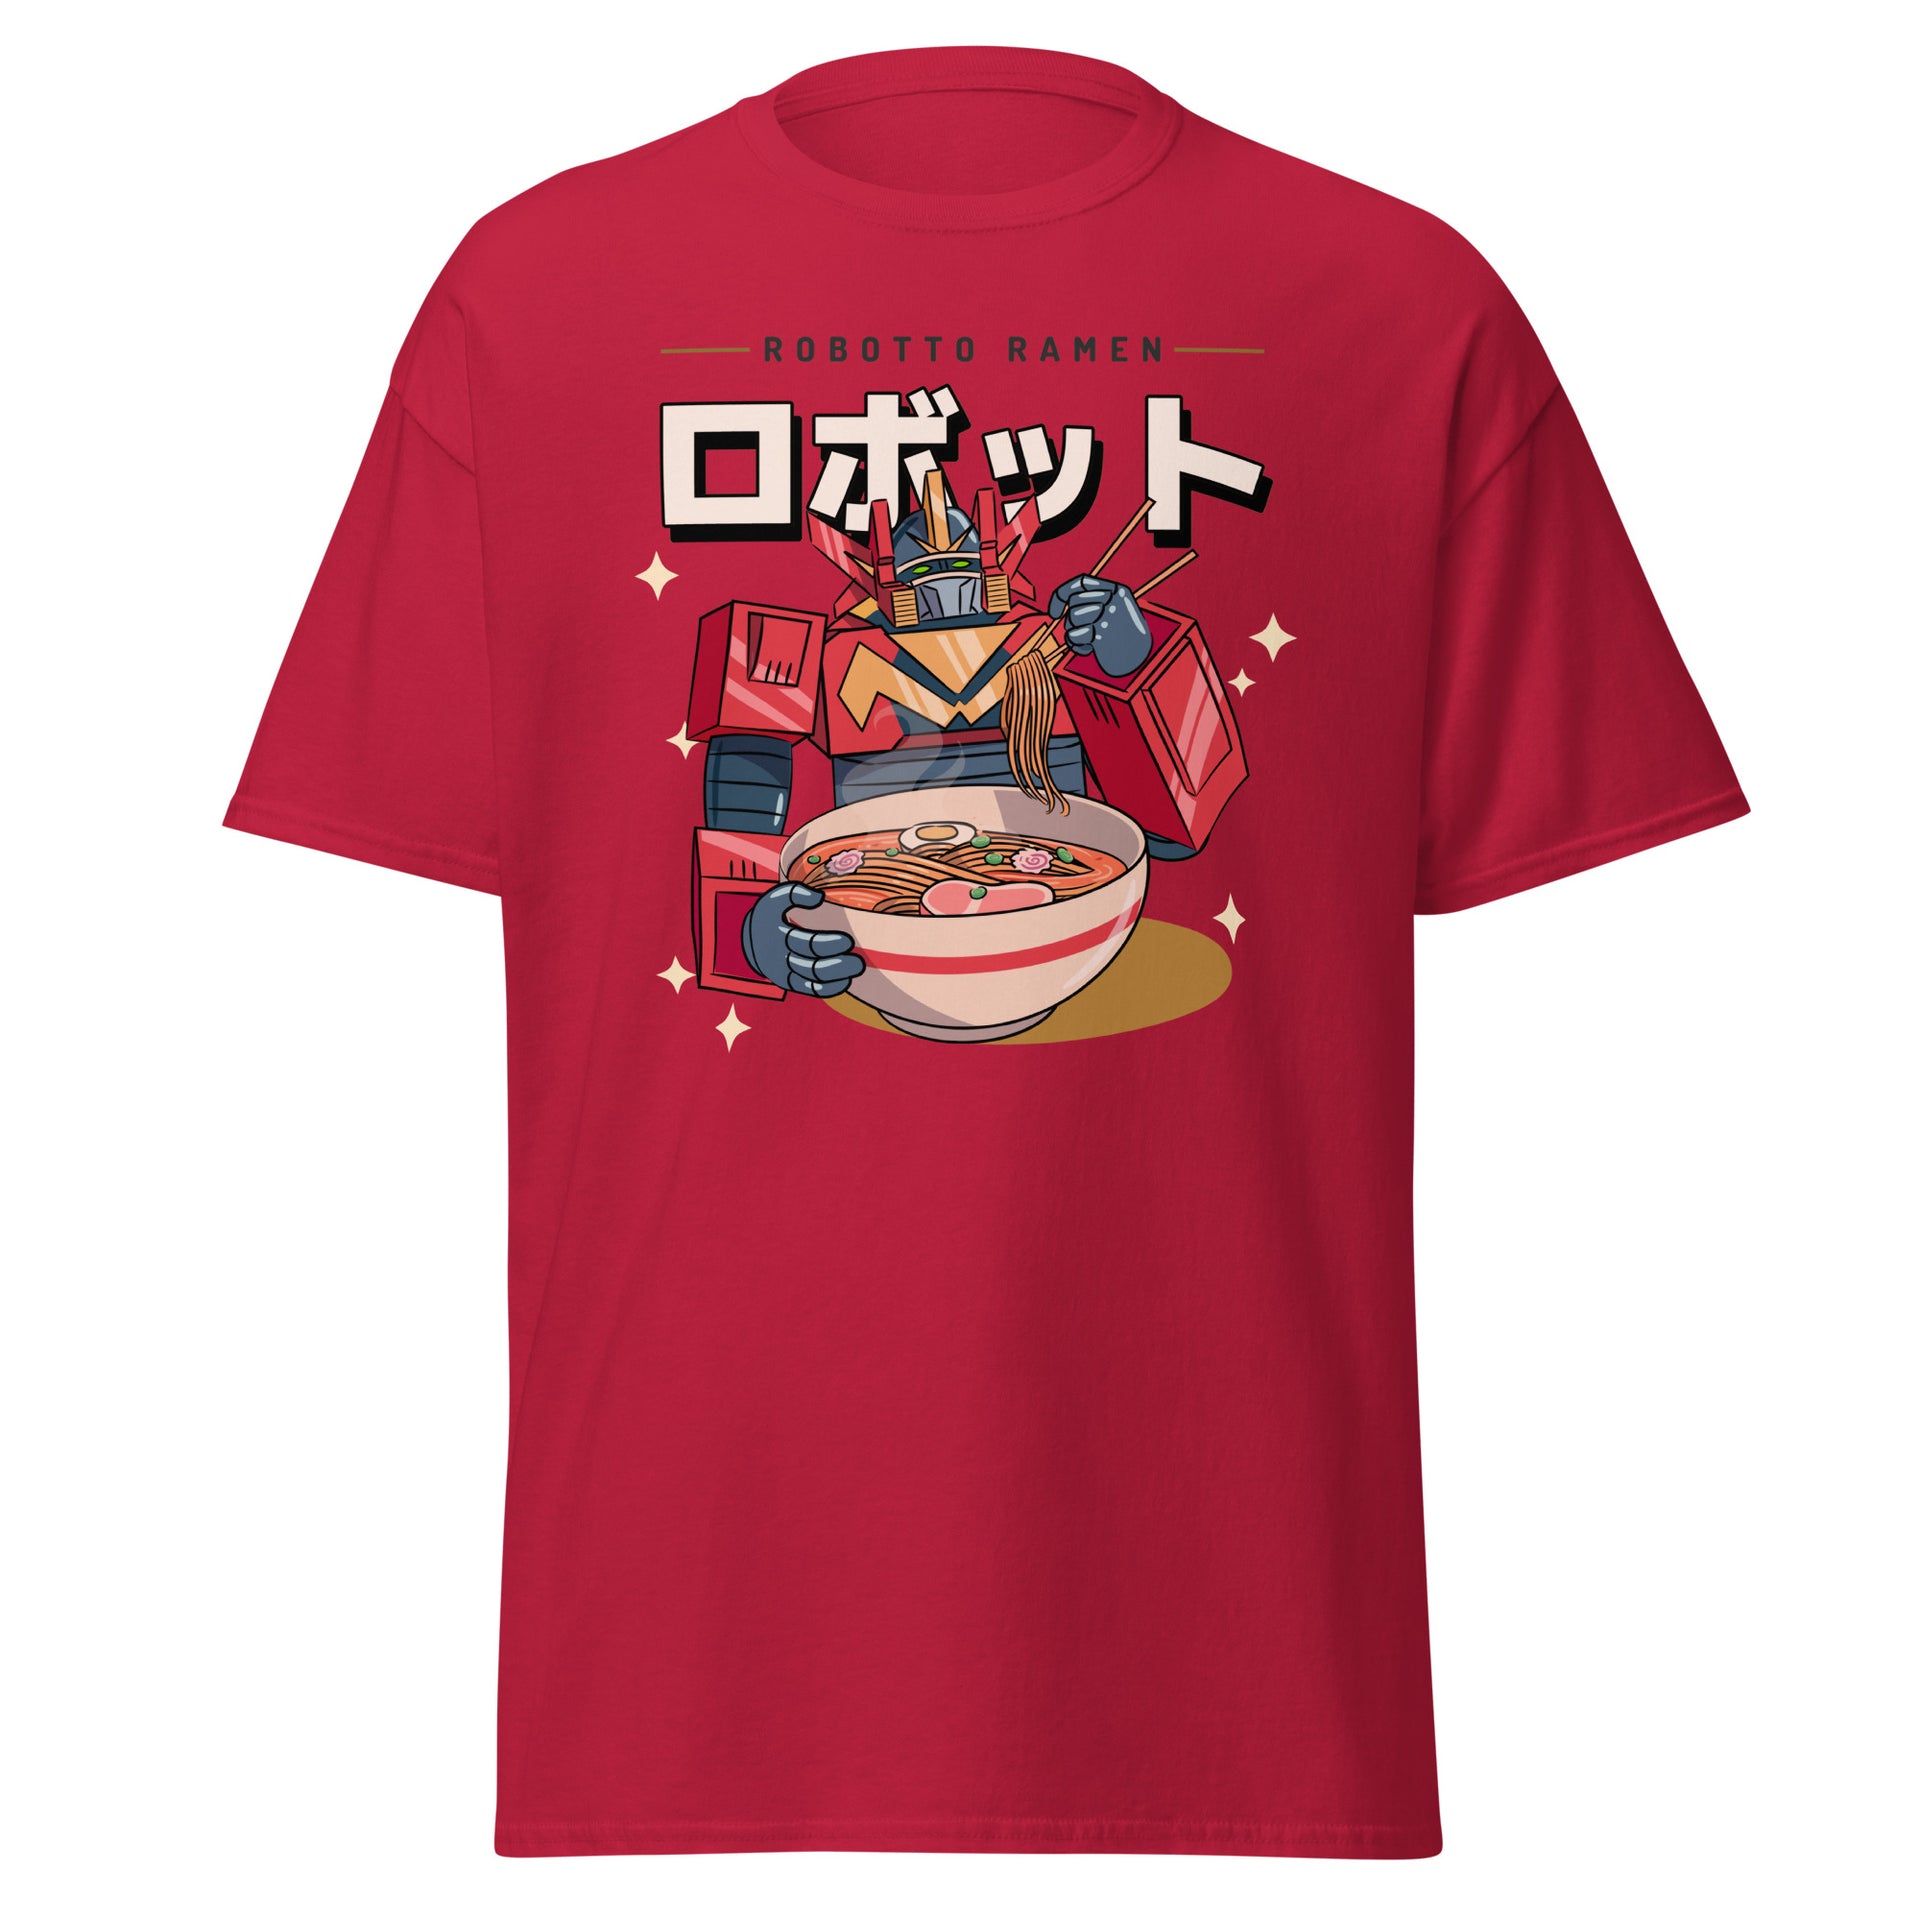 Robotto Ramen Men's T-Shirt